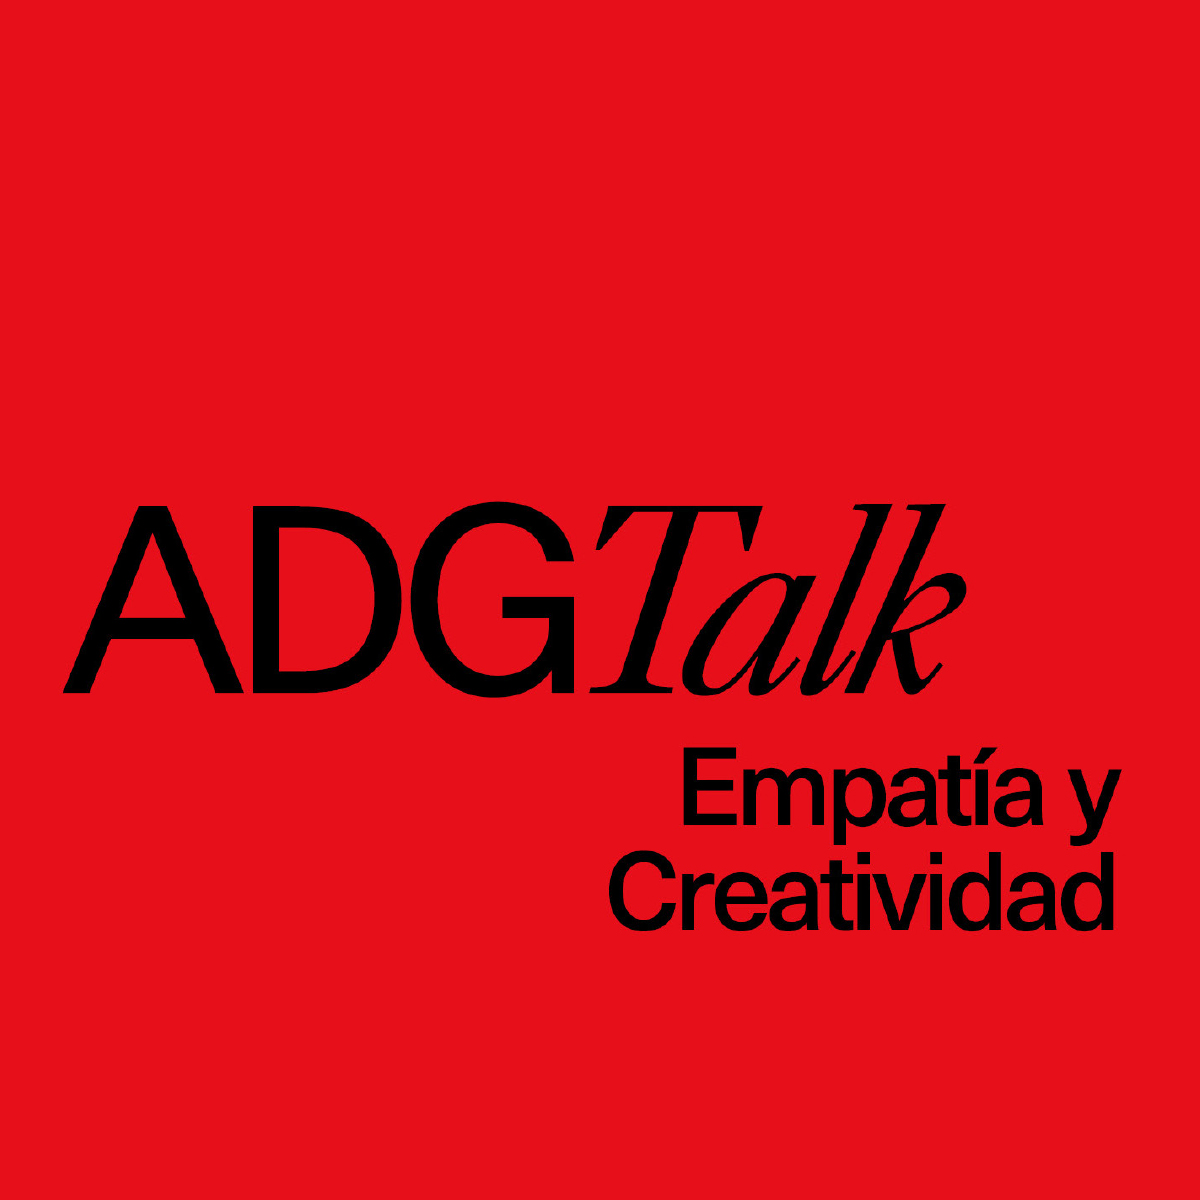 ADG Talk